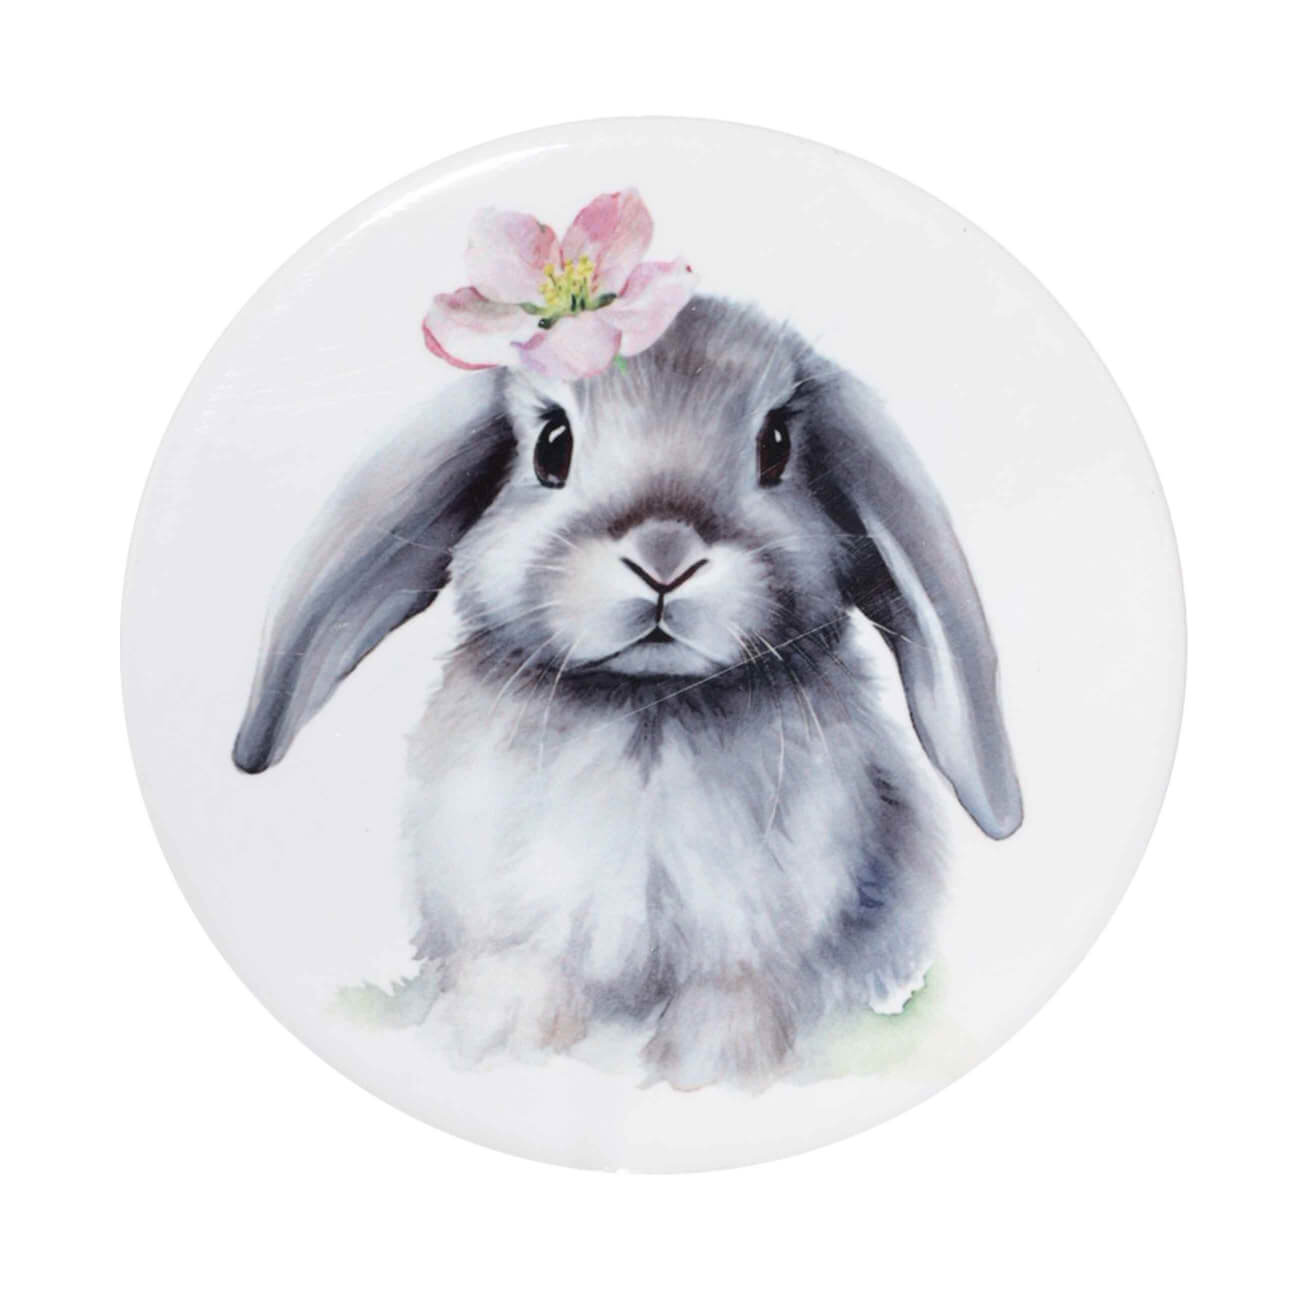 Подставка под кружку, 11 см, керамика/пробка, круглая, белая, Кролик с цветком, Pure Easter салфетка под приборы 30x45 см полиэстер прямоугольная белая кролик в ах pure easter